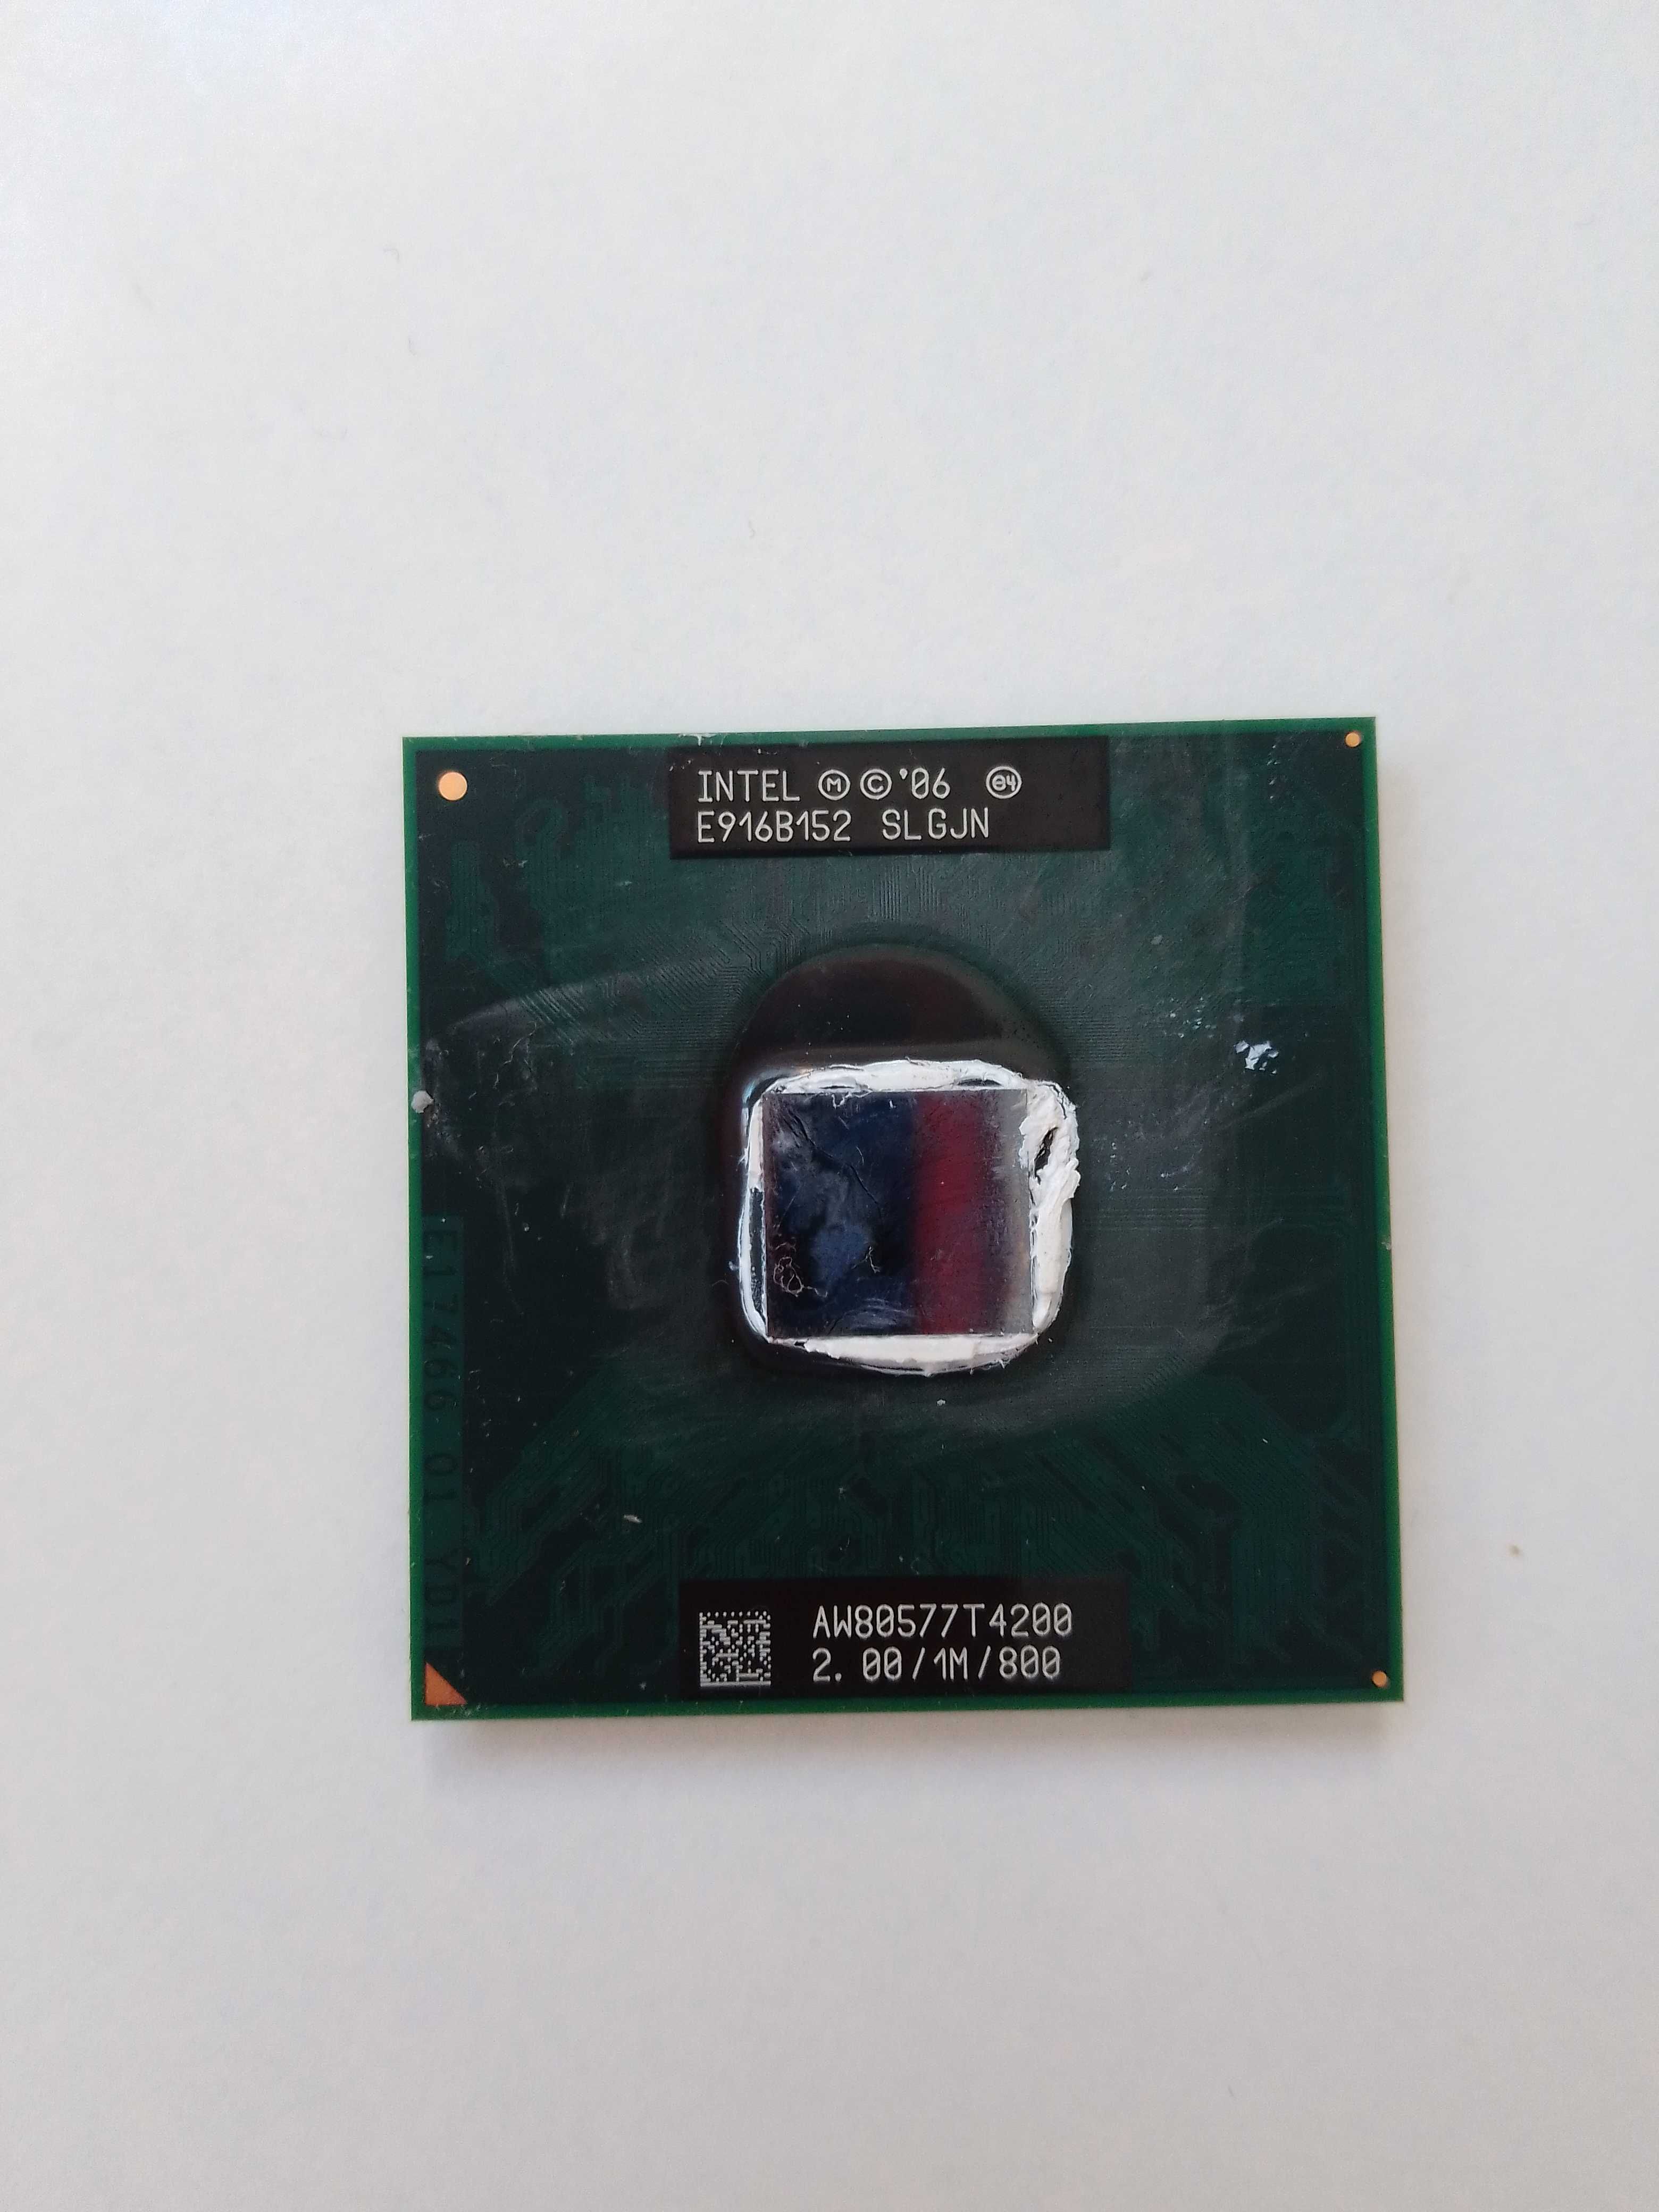 Procesor Intel '06 E916B152 SLGJN AW80577T4200 emachines E725 (002313)